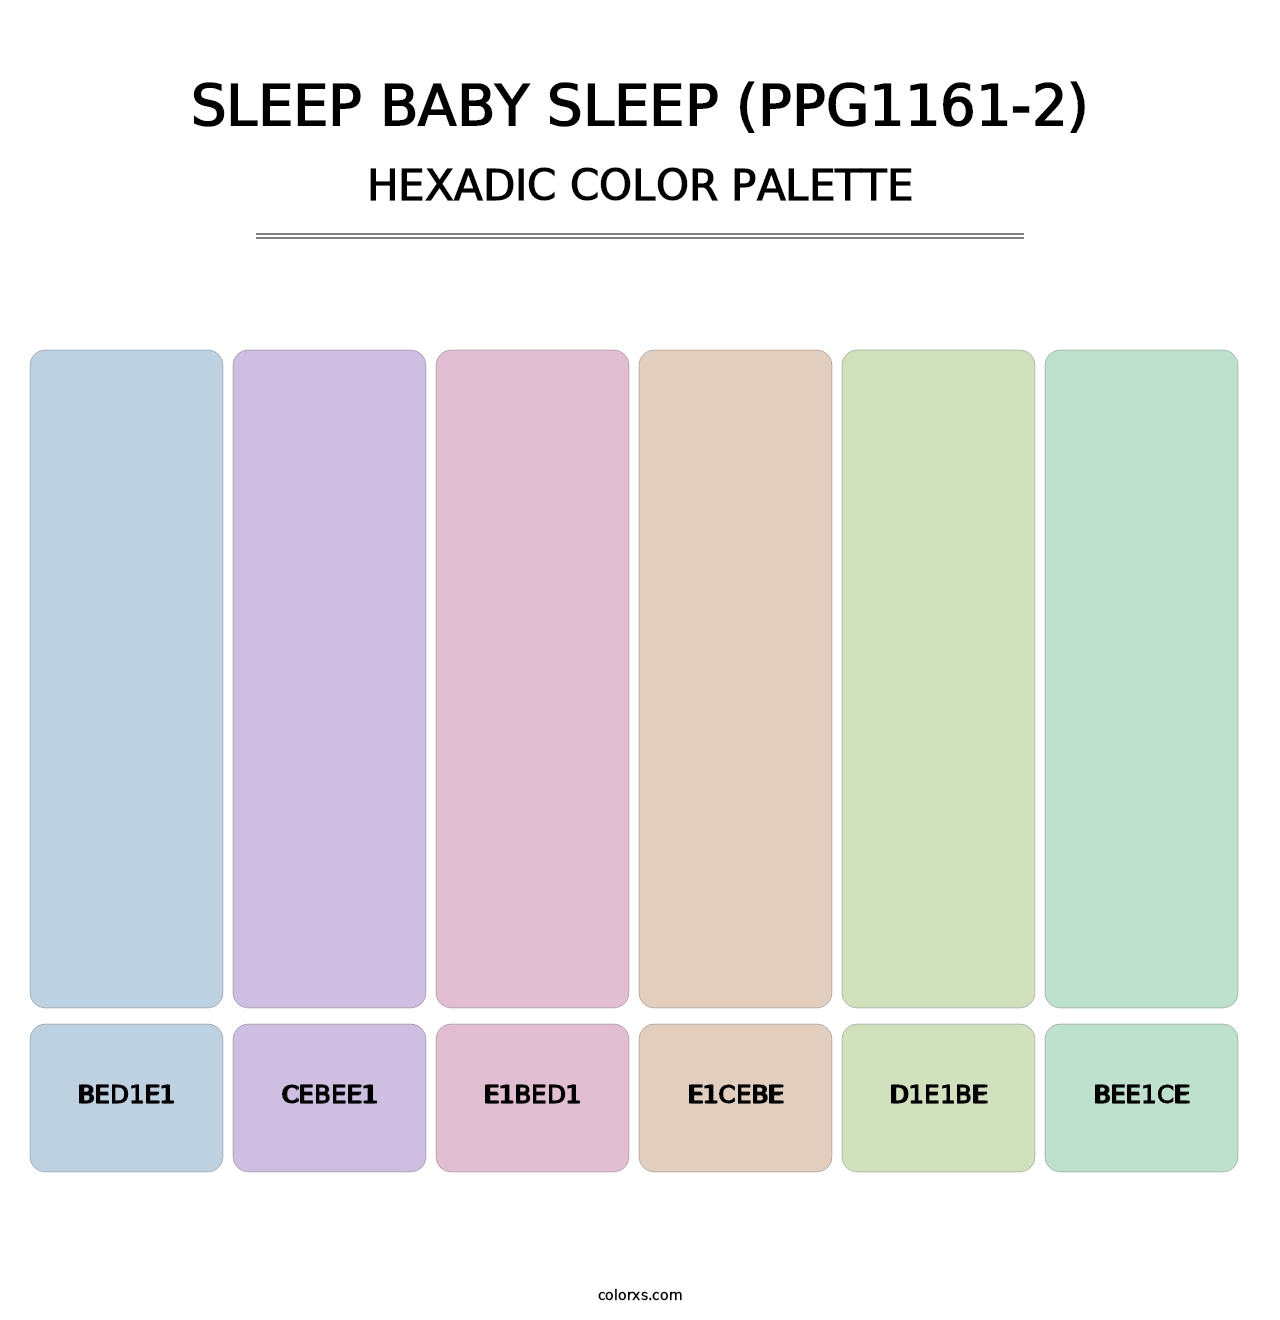 Sleep Baby Sleep (PPG1161-2) - Hexadic Color Palette